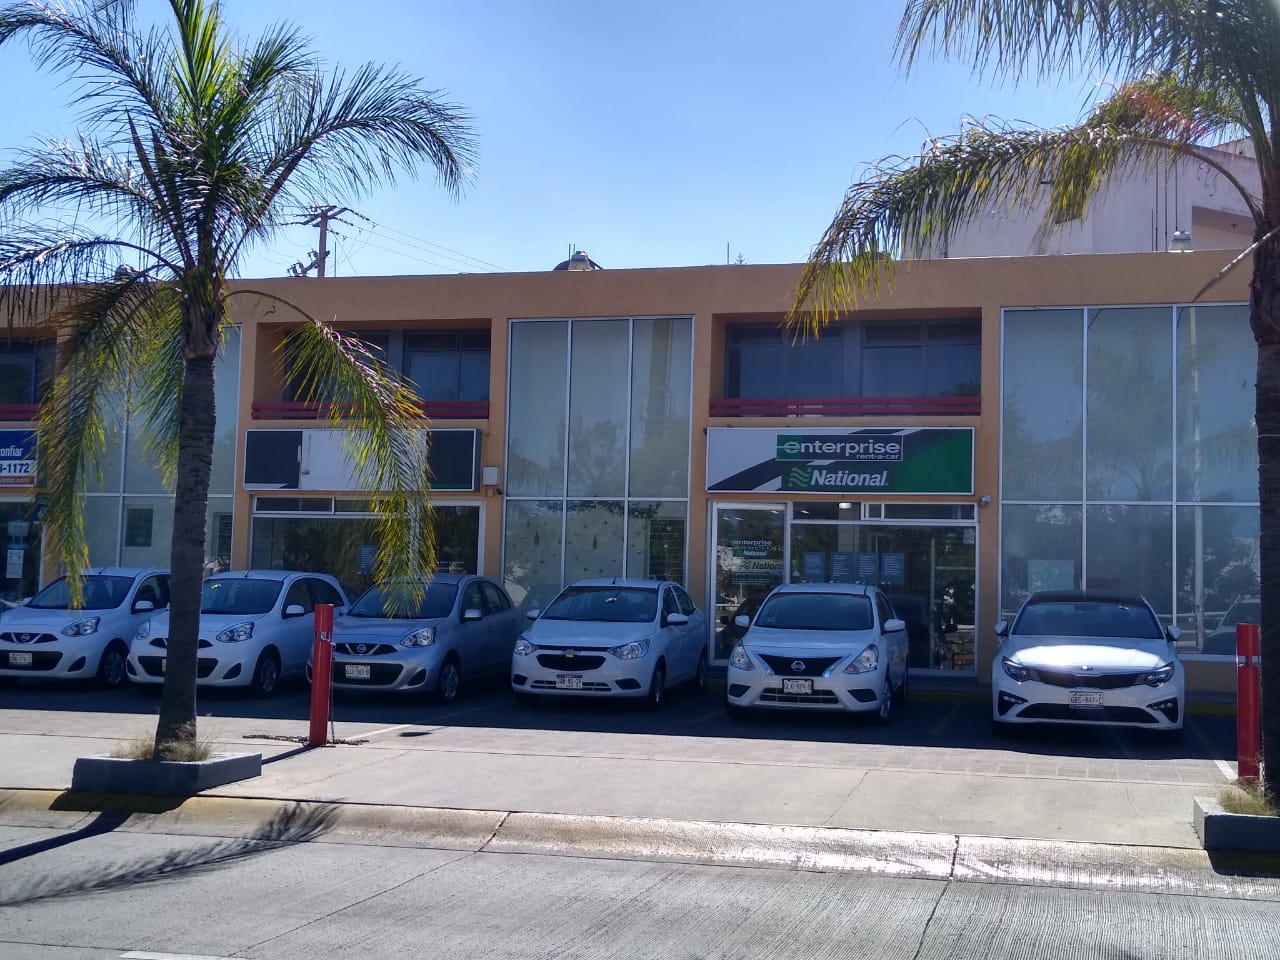 Renta de Autos en Guadalajara - Avenida Lázaro Cardenas